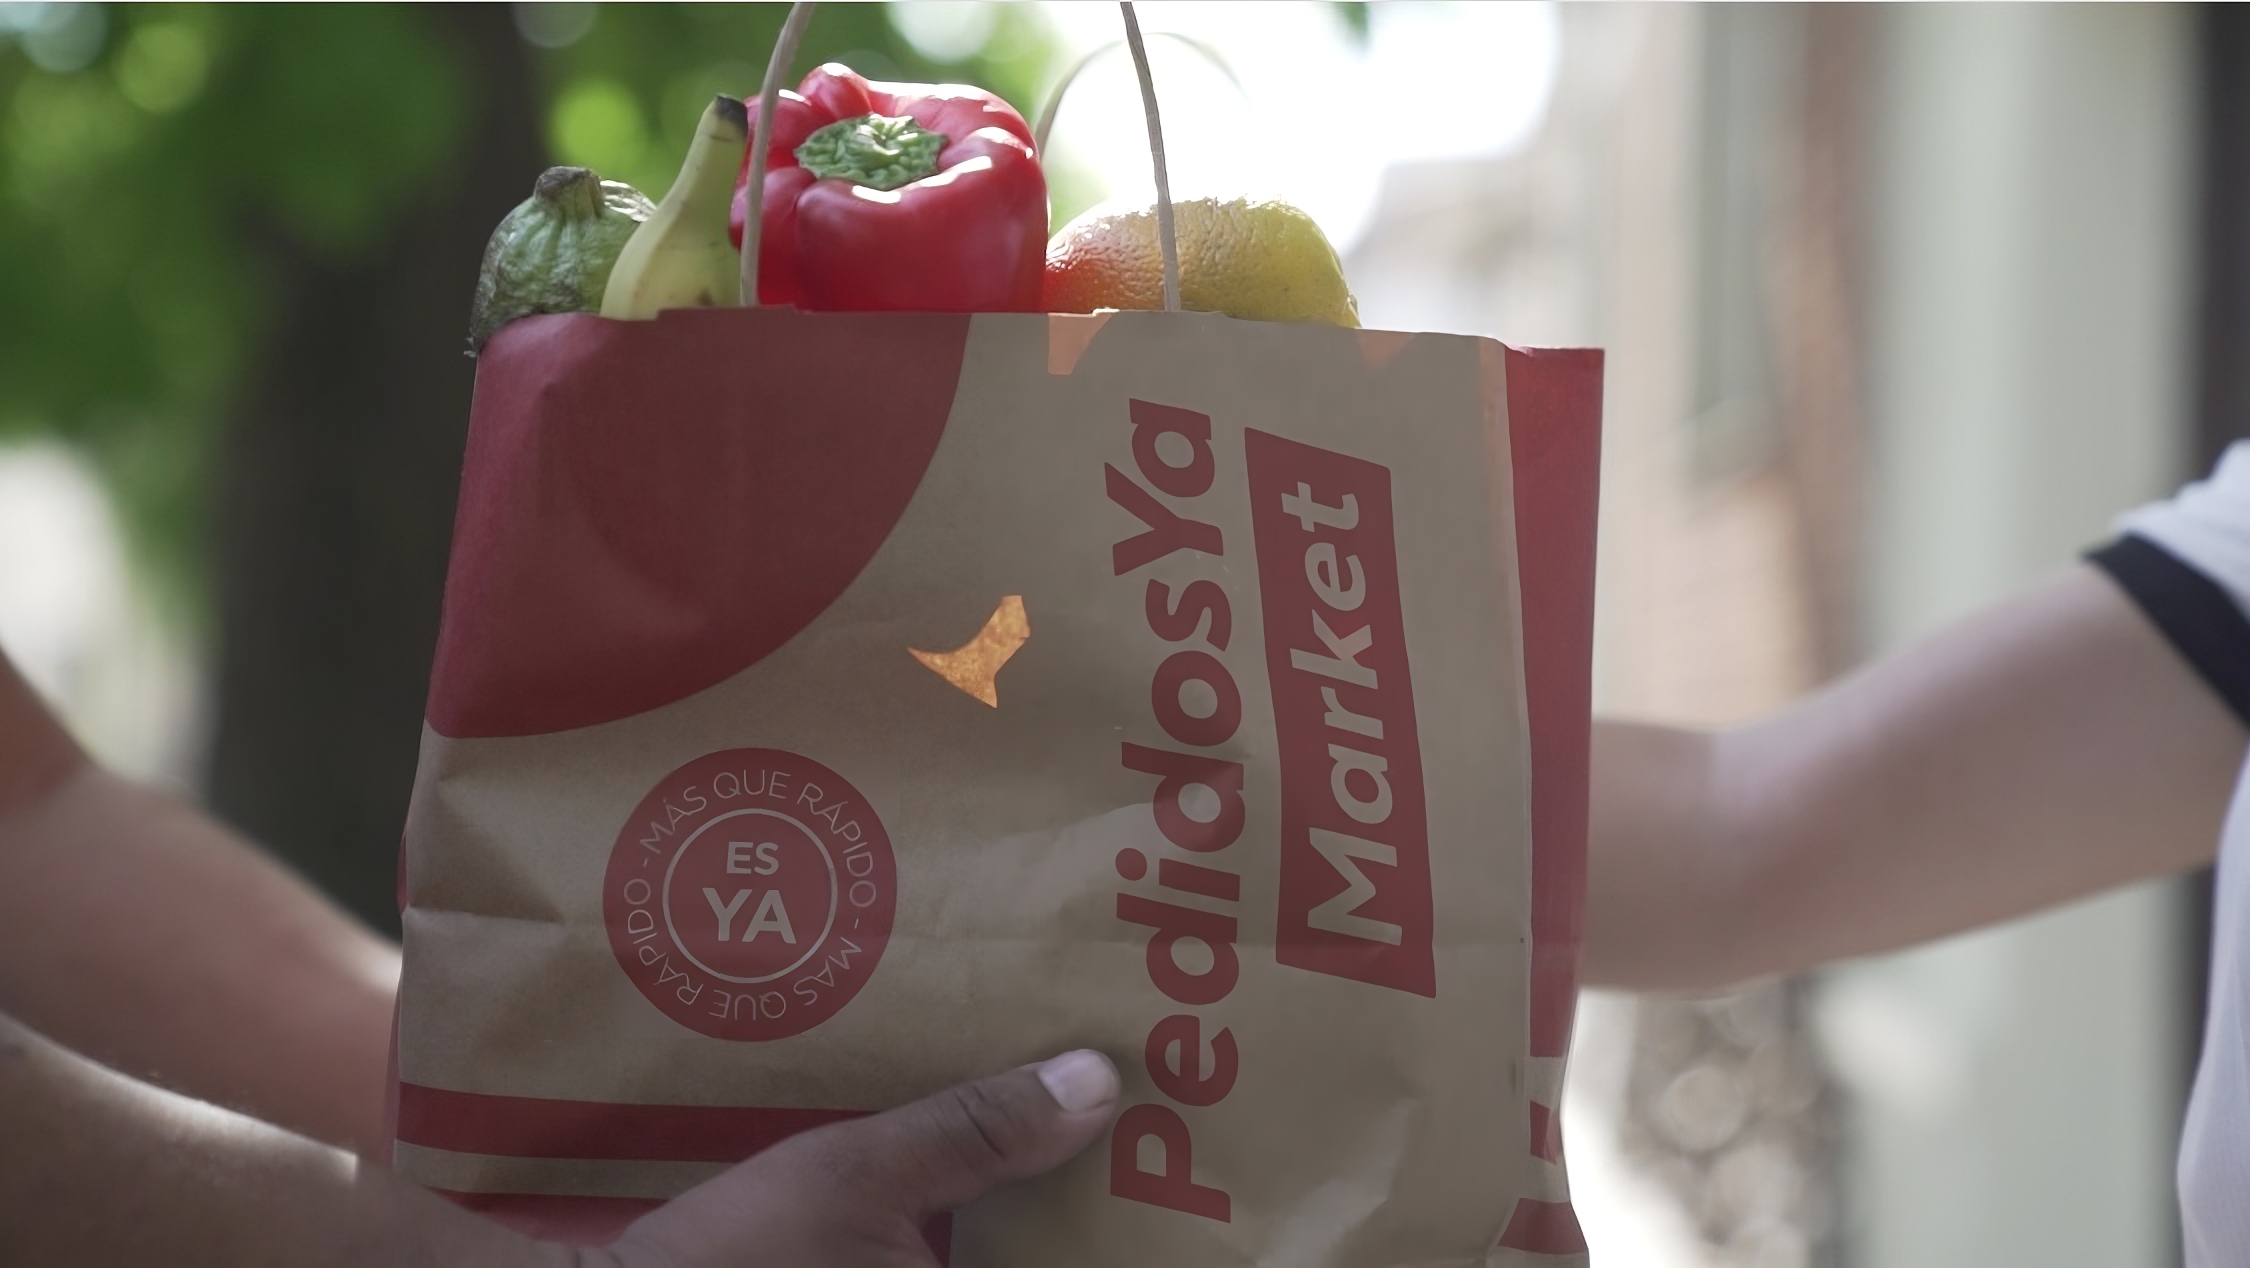 PedidosYa en campaña por el Mes del Ambiente sin desperdicio de alimentos en supermercados digitales